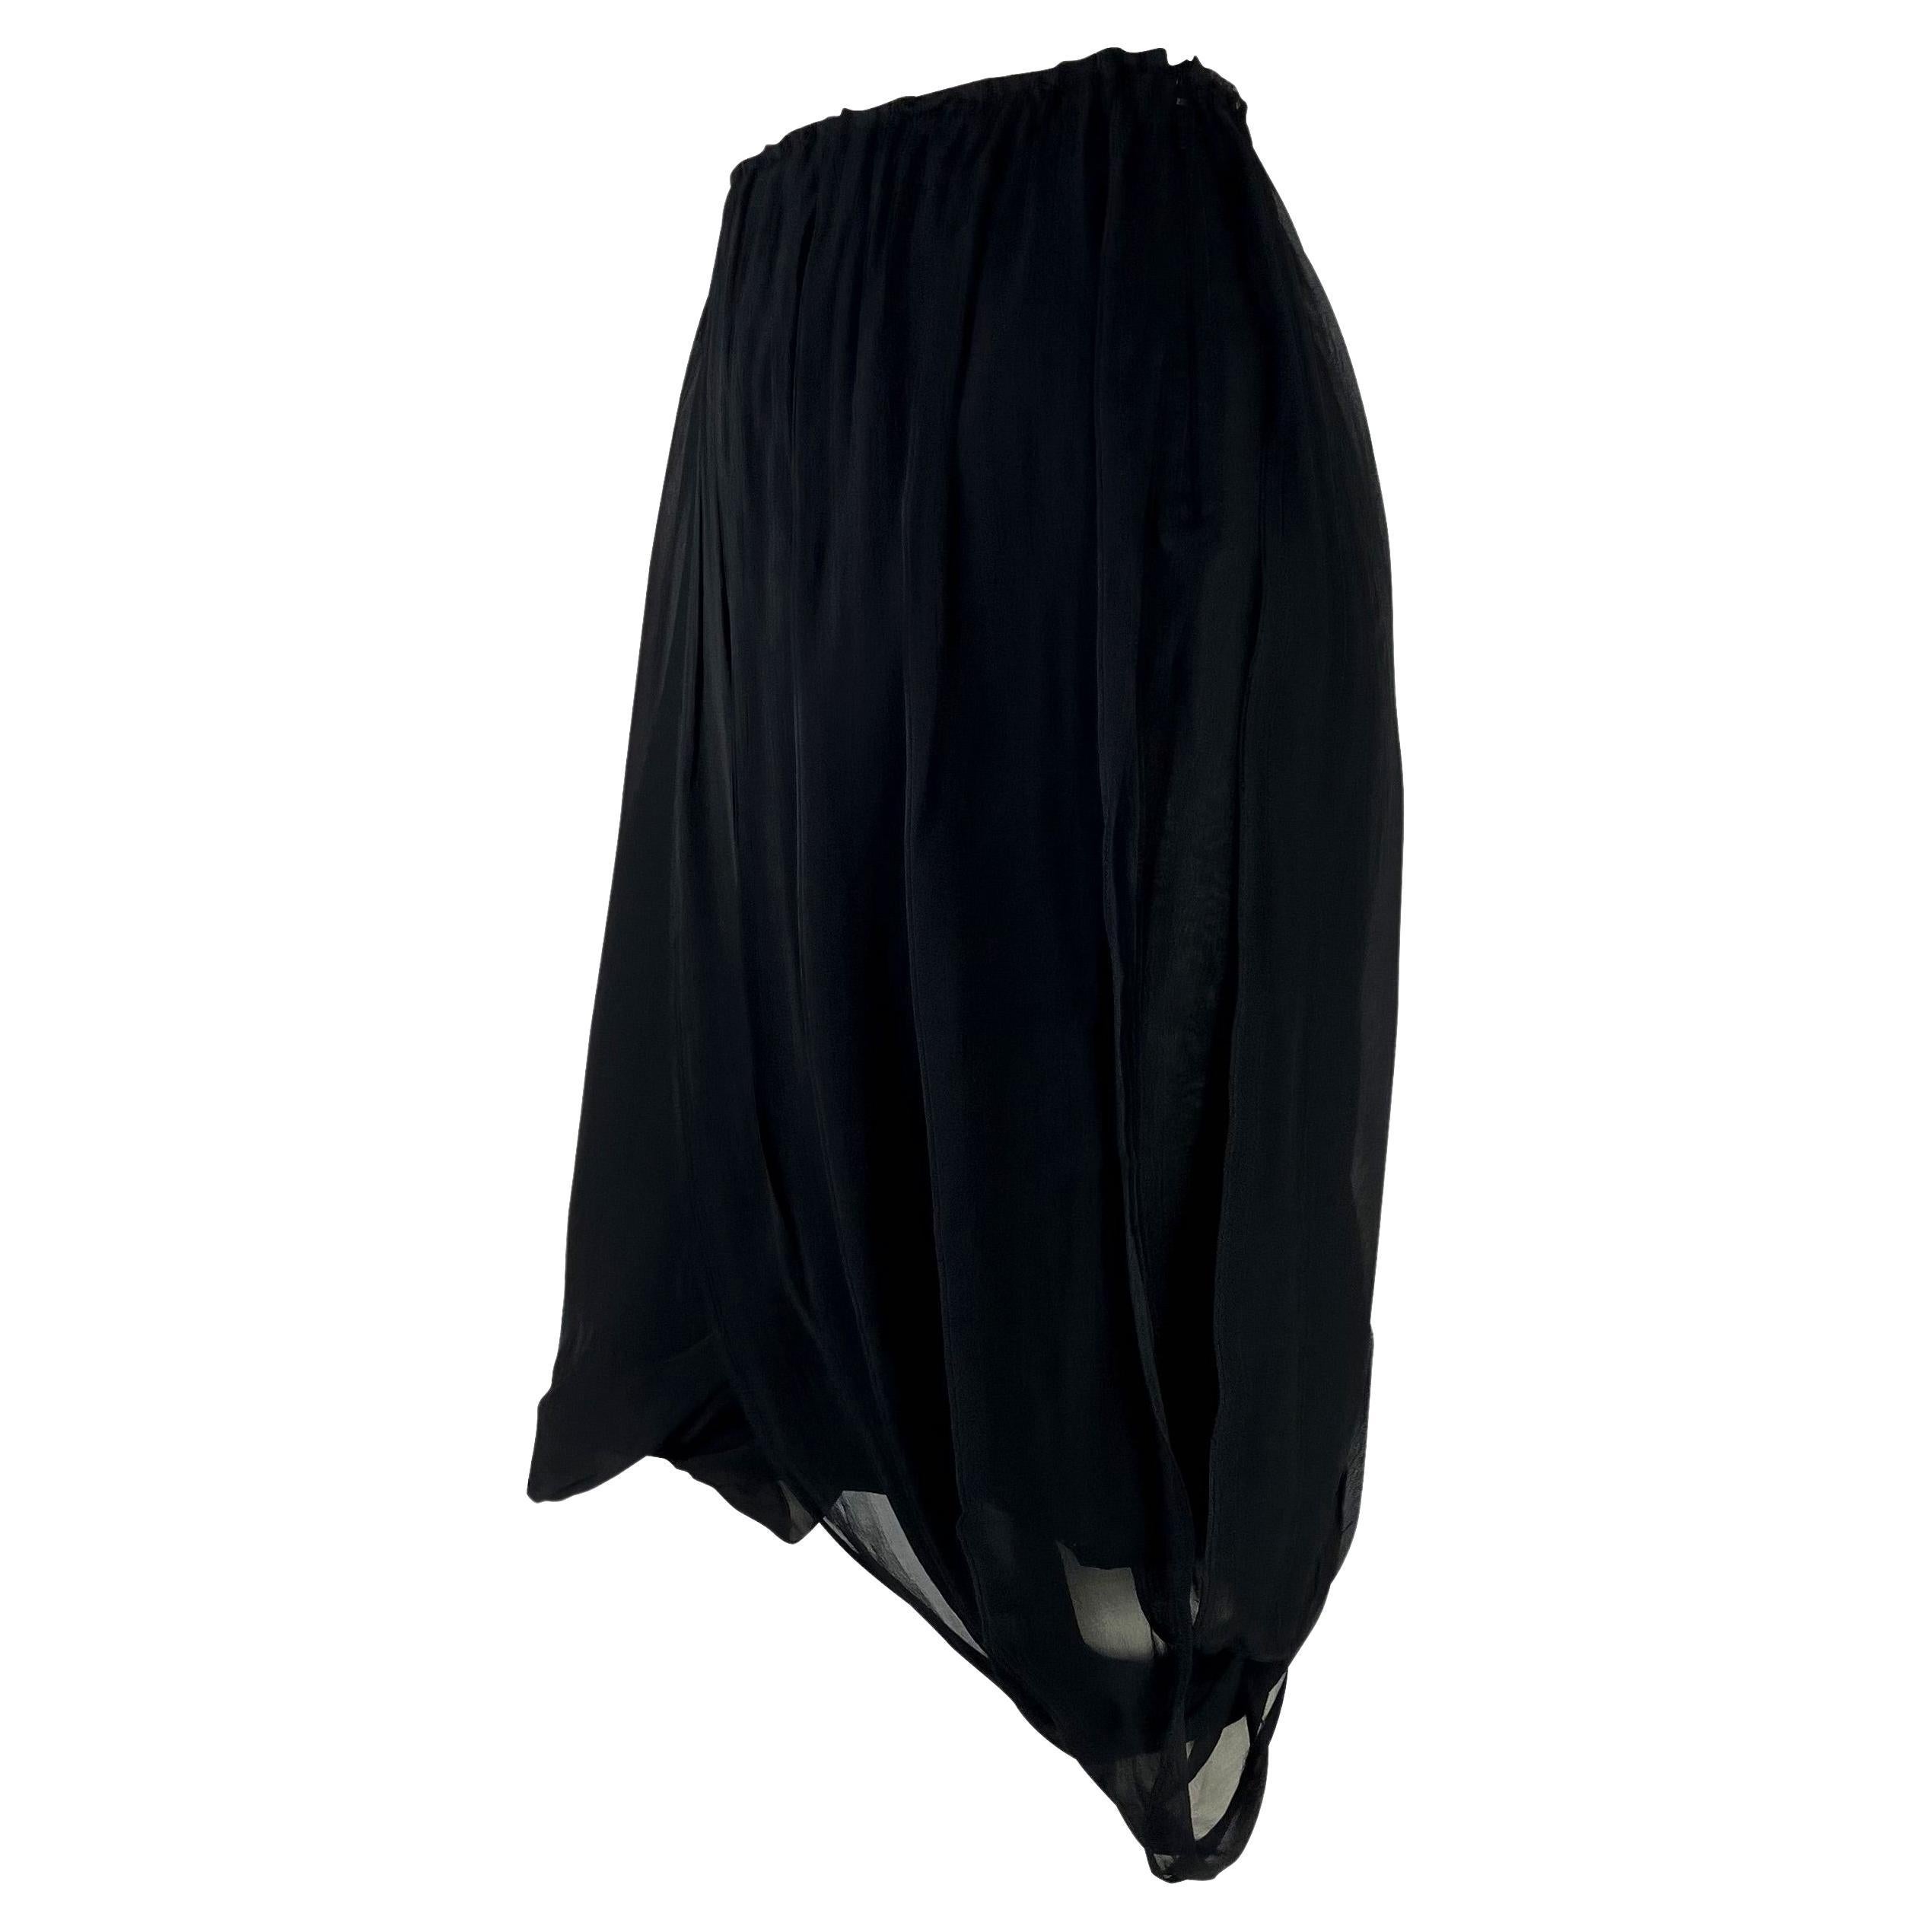 Présentation d'une magnifique jupe Gucci en mousseline de soie noire, dessinée par Tom Ford. Datant de 2002, cette jupe est drapée de légères couches de mousseline de soie qui se balancent à chaque mouvement. 

Mesures approximatives :
Taille -